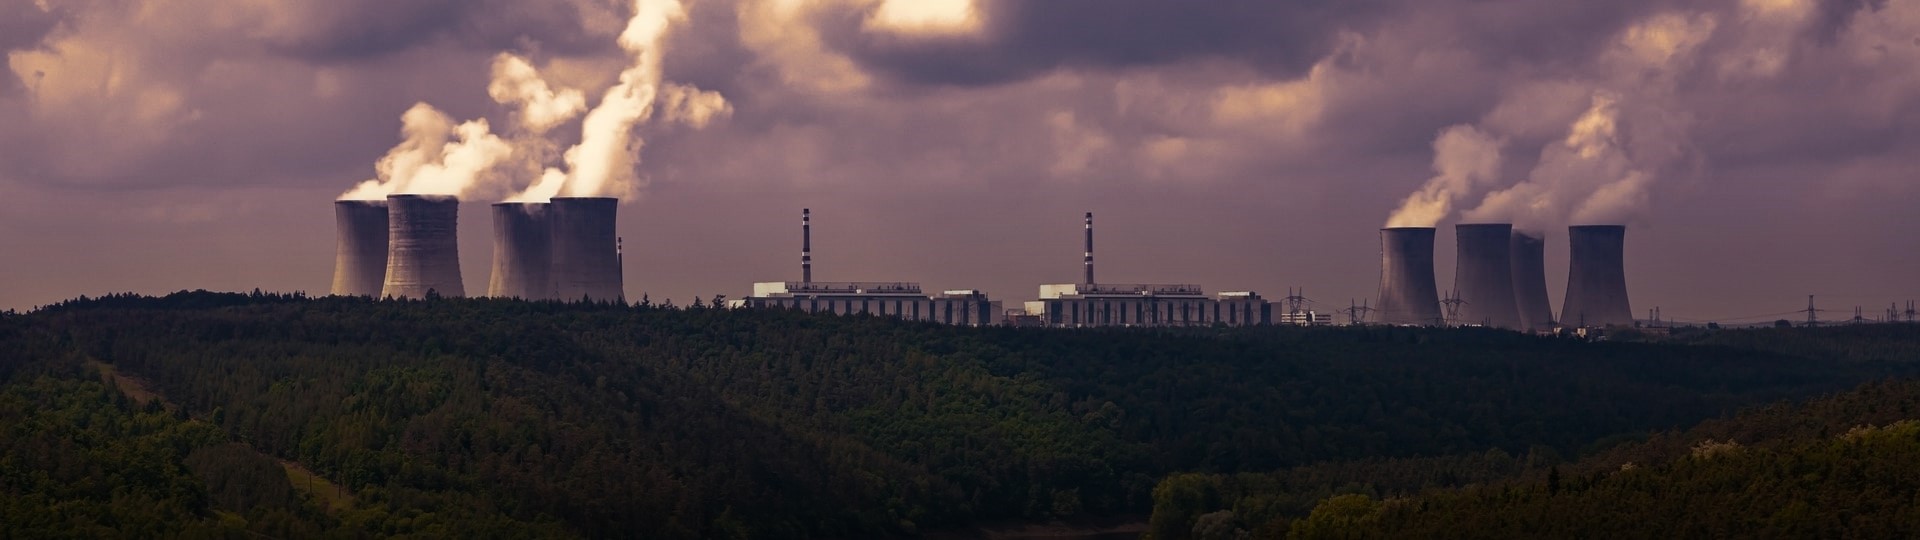 Jaderná elektrárna Dukovany má zásoby paliva z Ruska nejméně na tři roky